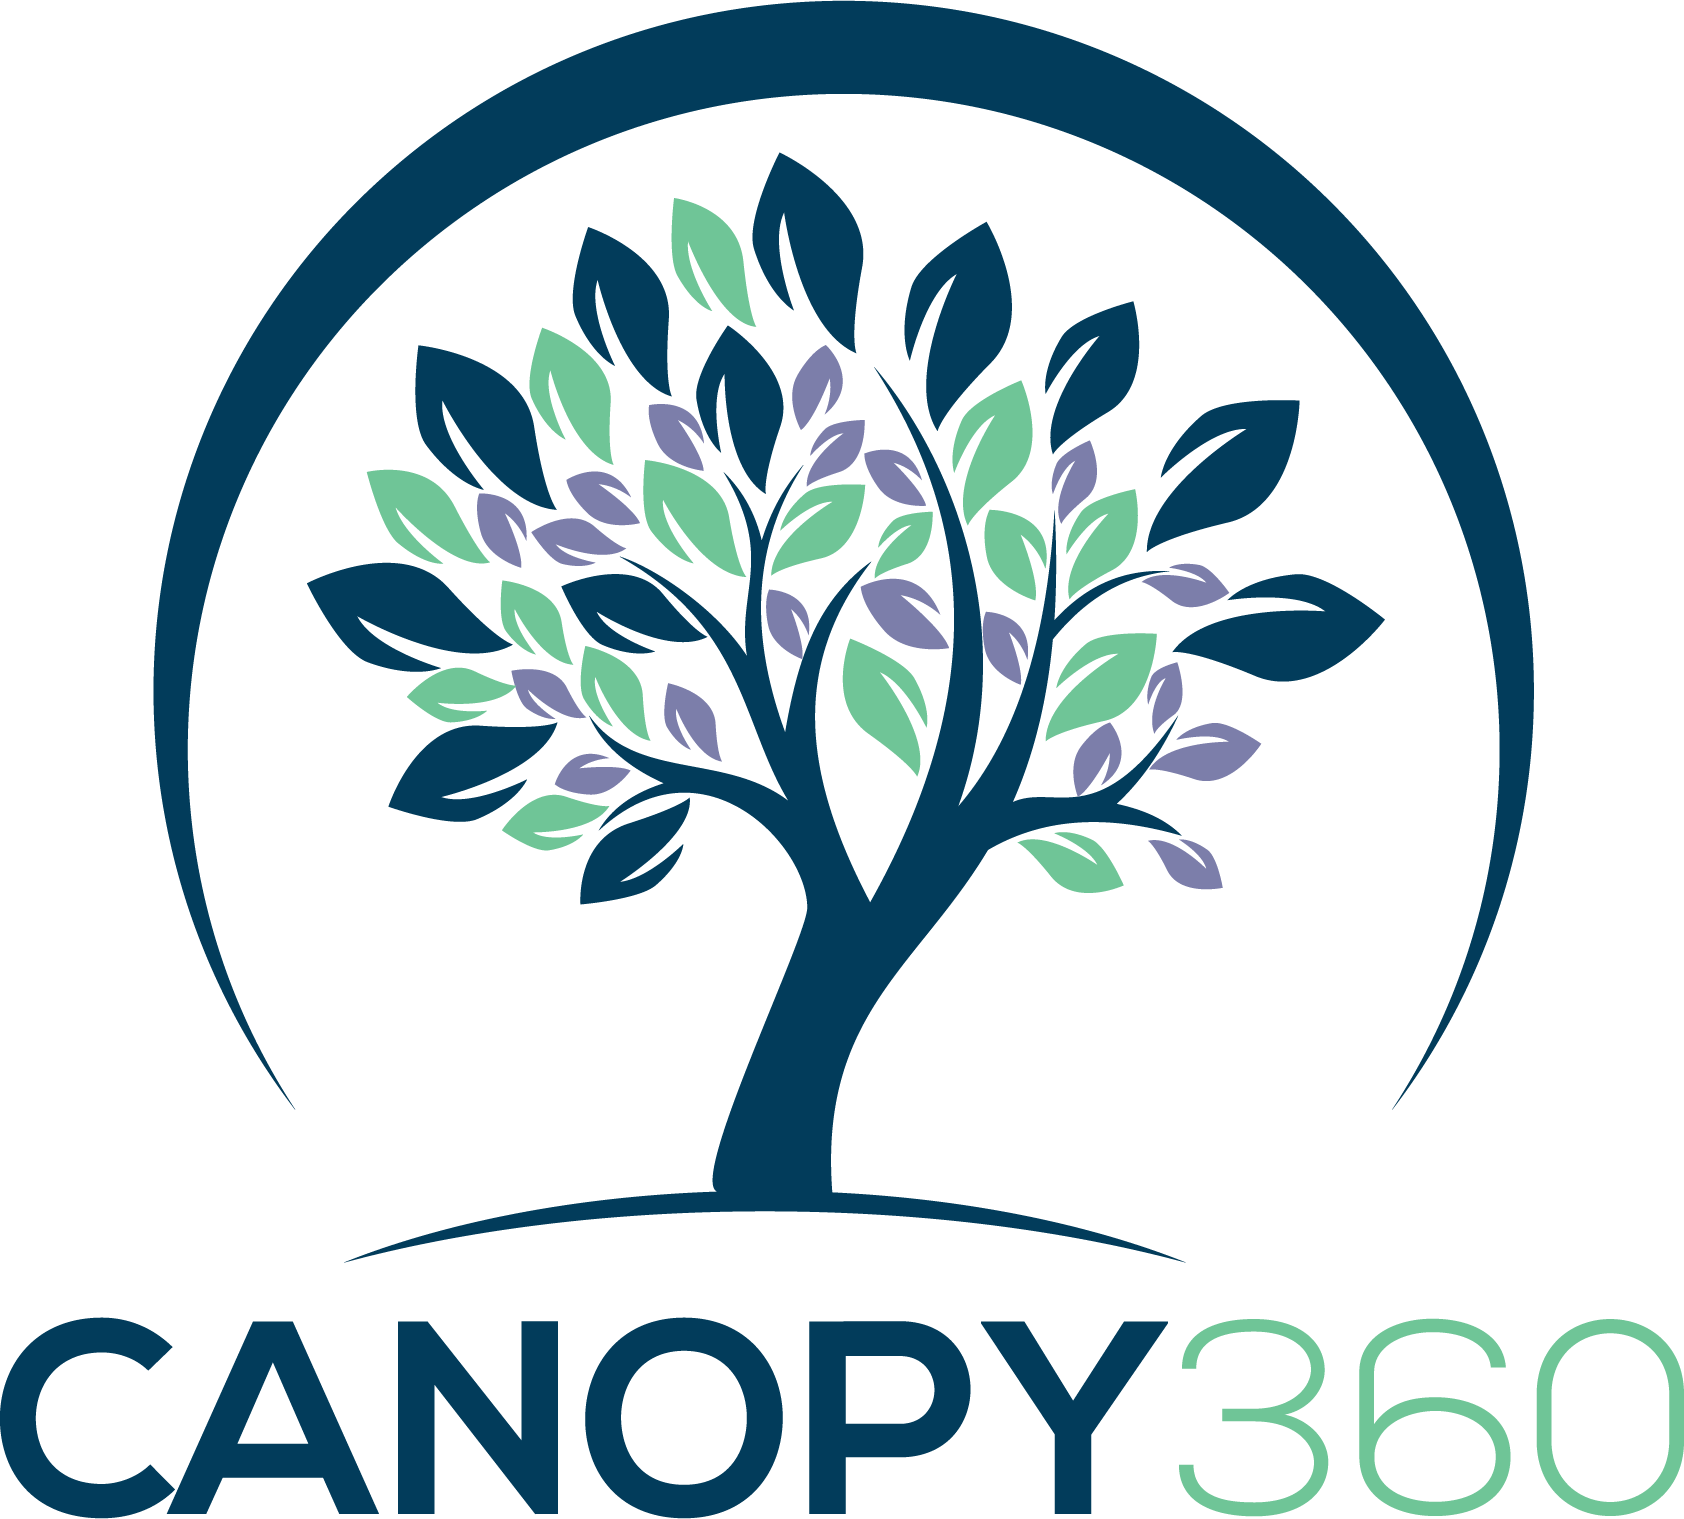 Menu - Canopy 360 (1684x1519)